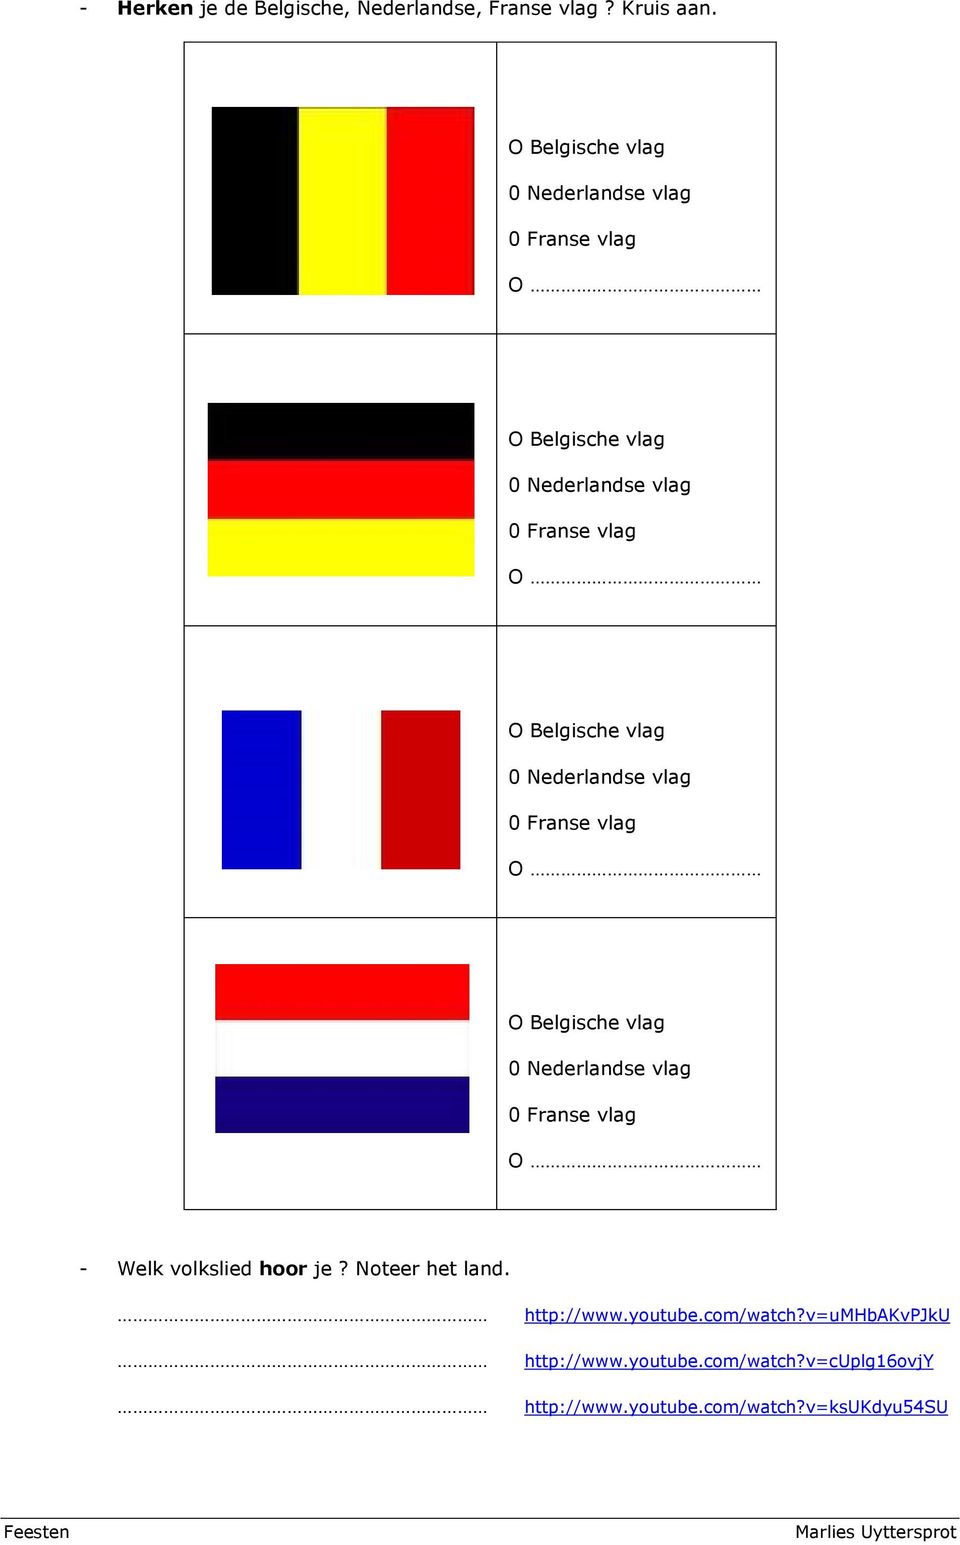 Belgische vlag 0 Nederlandse vlag 0 Franse vlag O O Belgische vlag 0 Nederlandse vlag 0 Franse vlag O - Welk